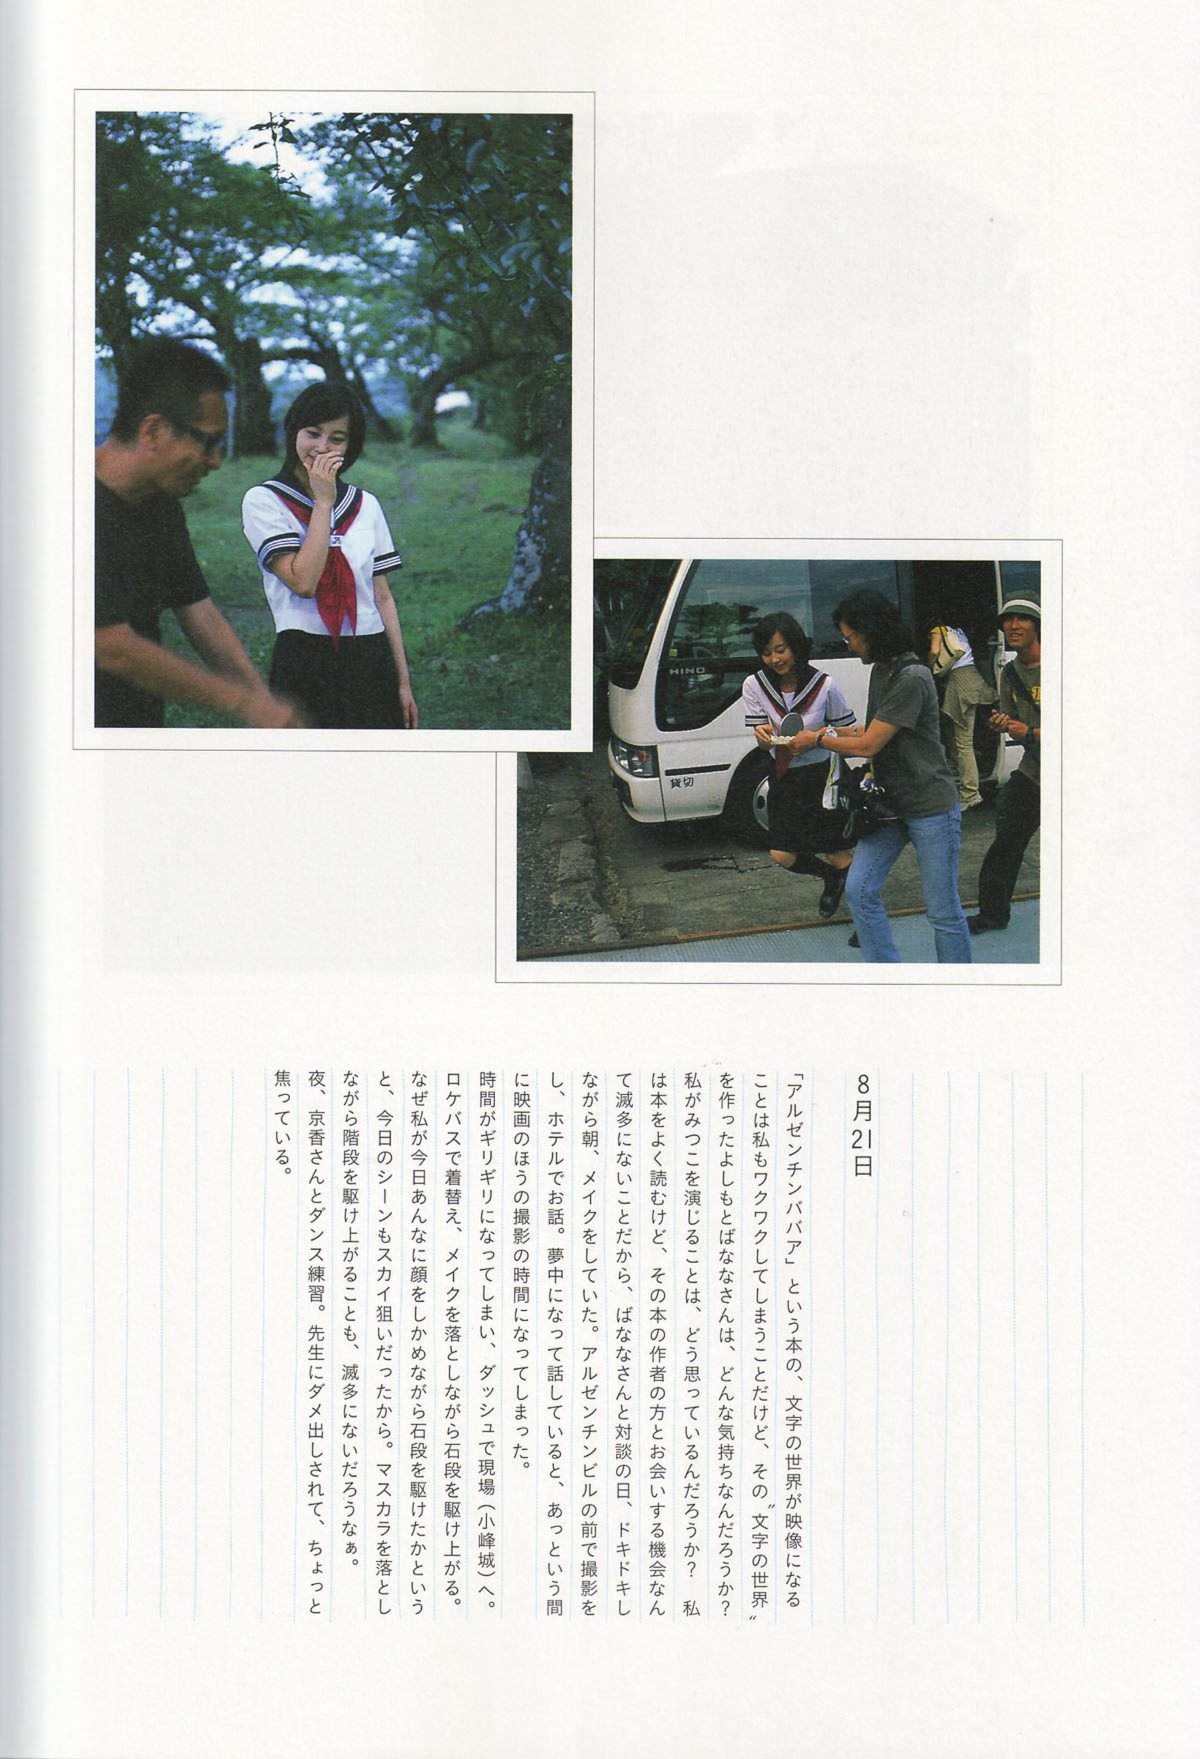 Photobook Maki Horikita 堀北真希 Cinematic 2007 03 07 0015 7211936675.jpg